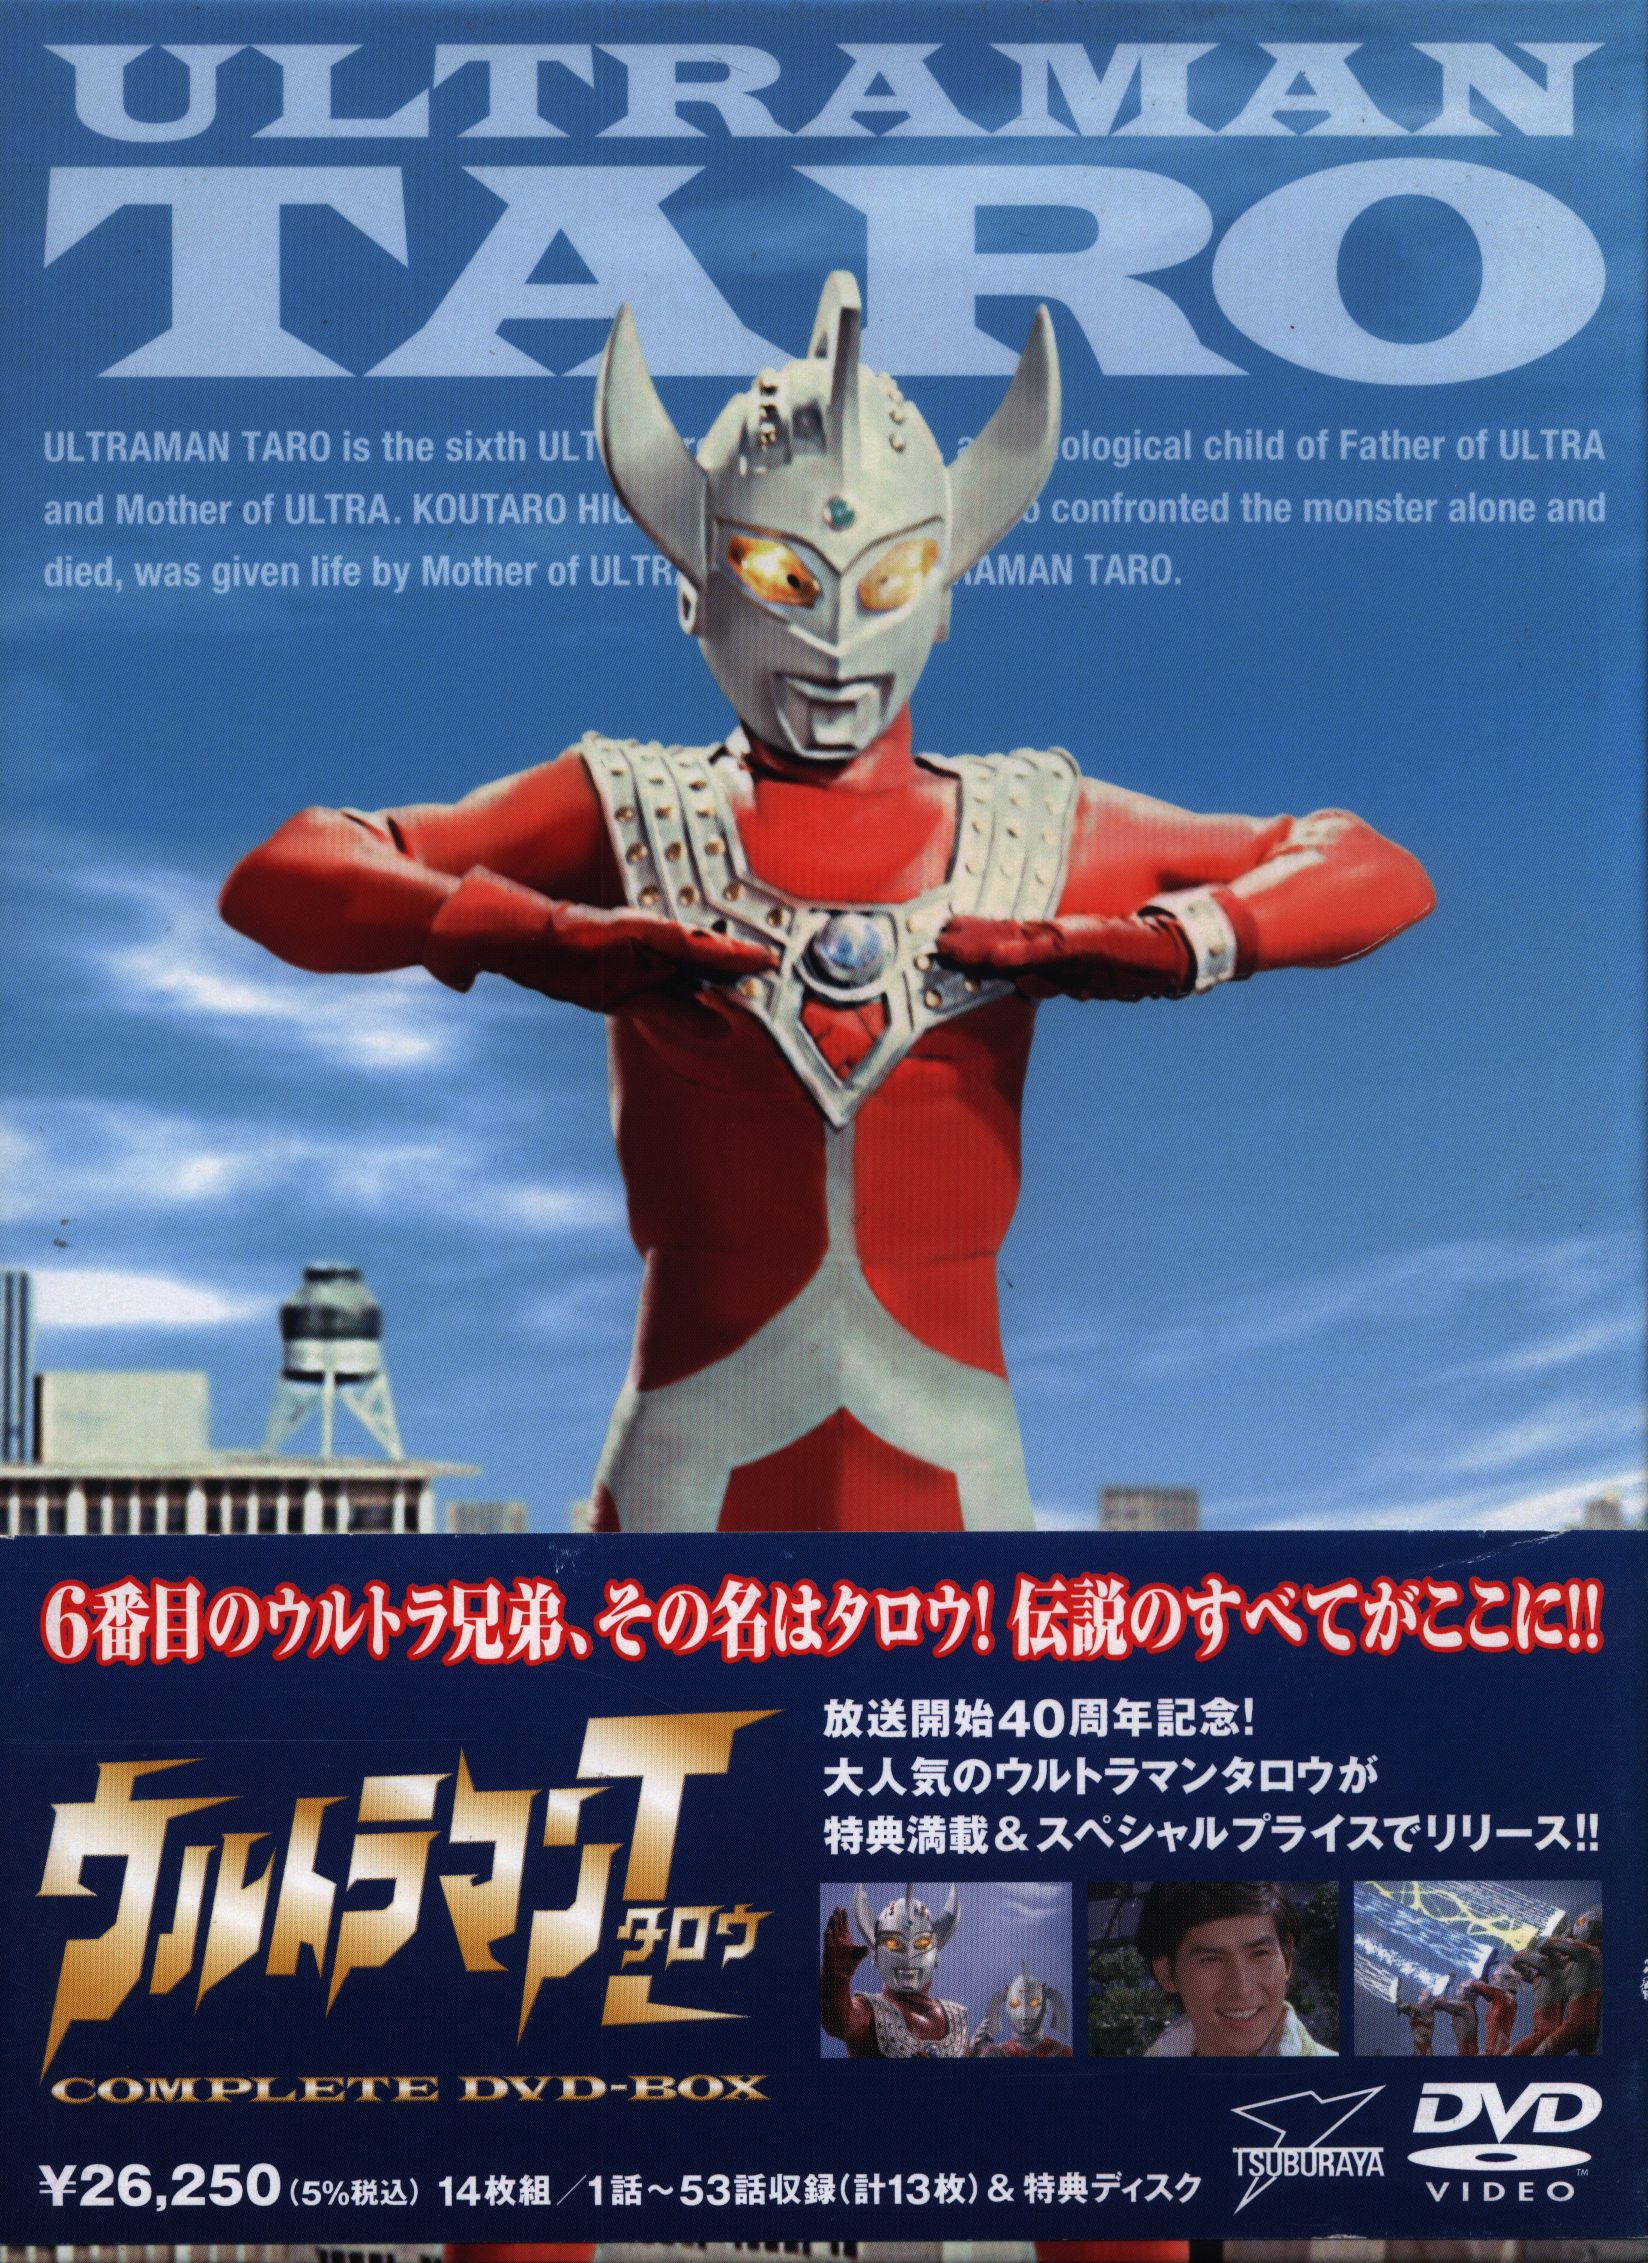 Tokusatsu DVD Ultraman Taro COMPLETE DVD-BOX | Mandarake Online Shop